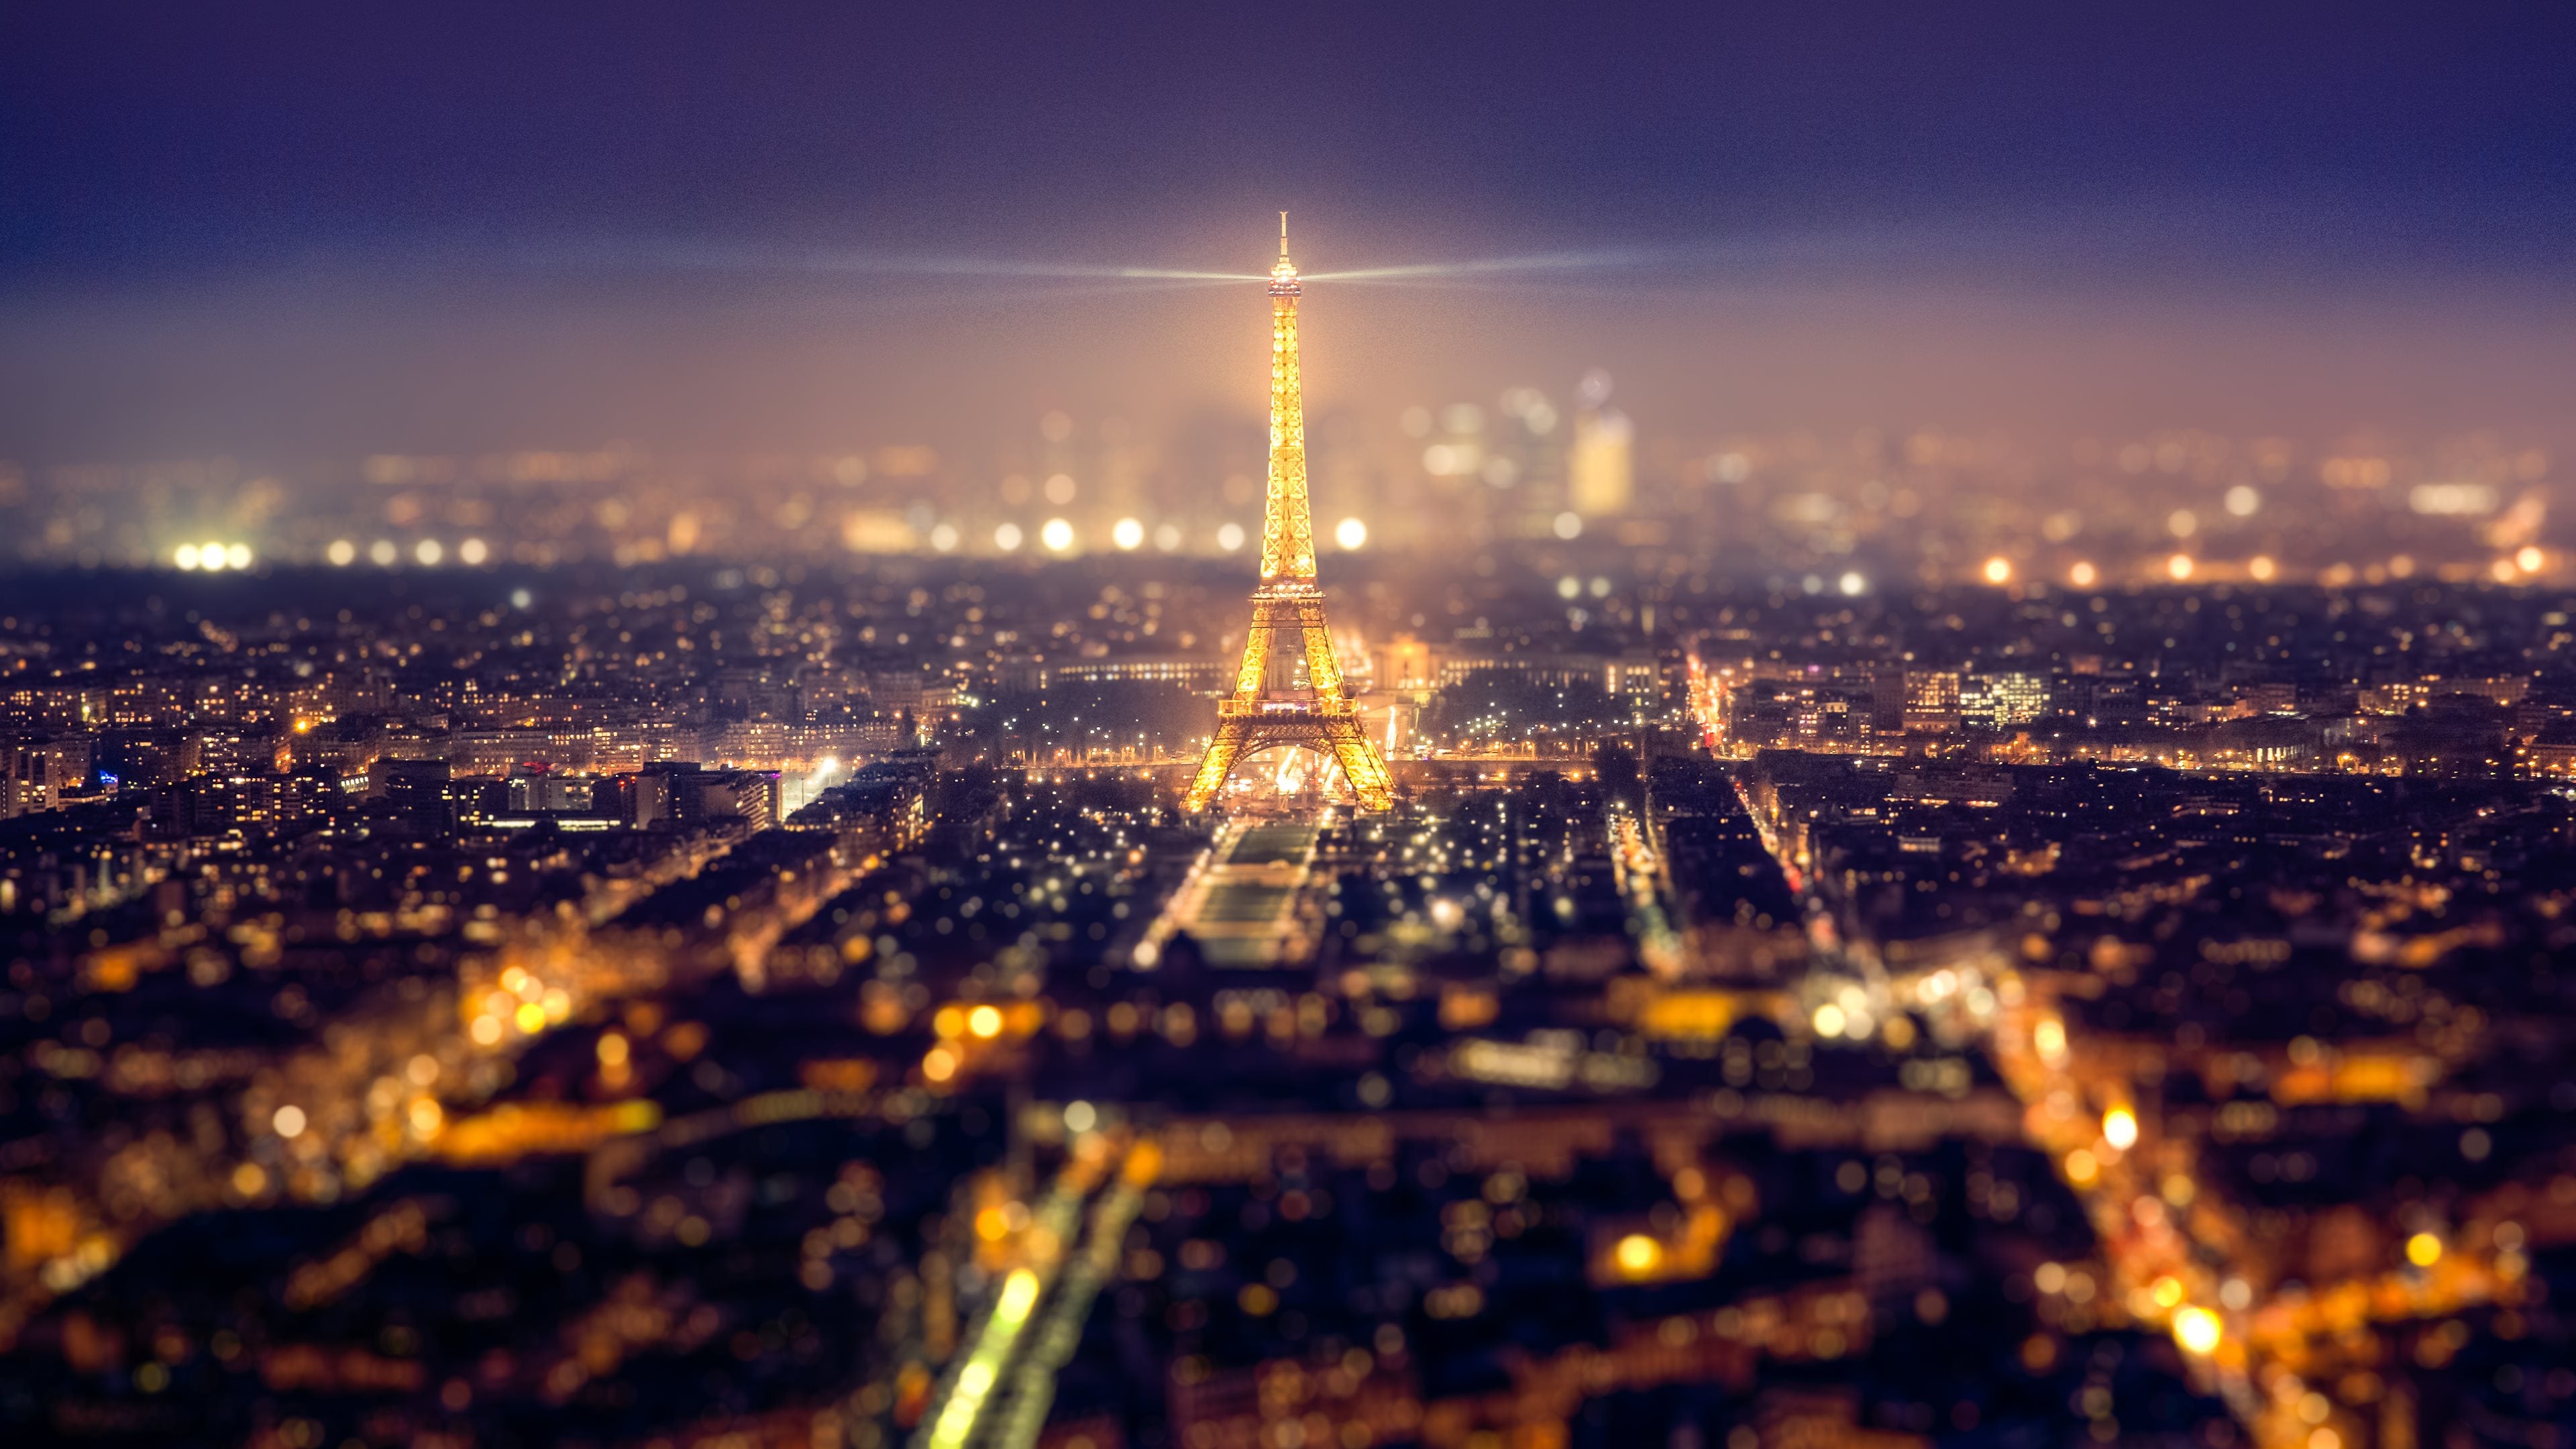 Eiffel Tower Tower Paris Lights Night HD wallpaper | man made | Wallpaper  Better